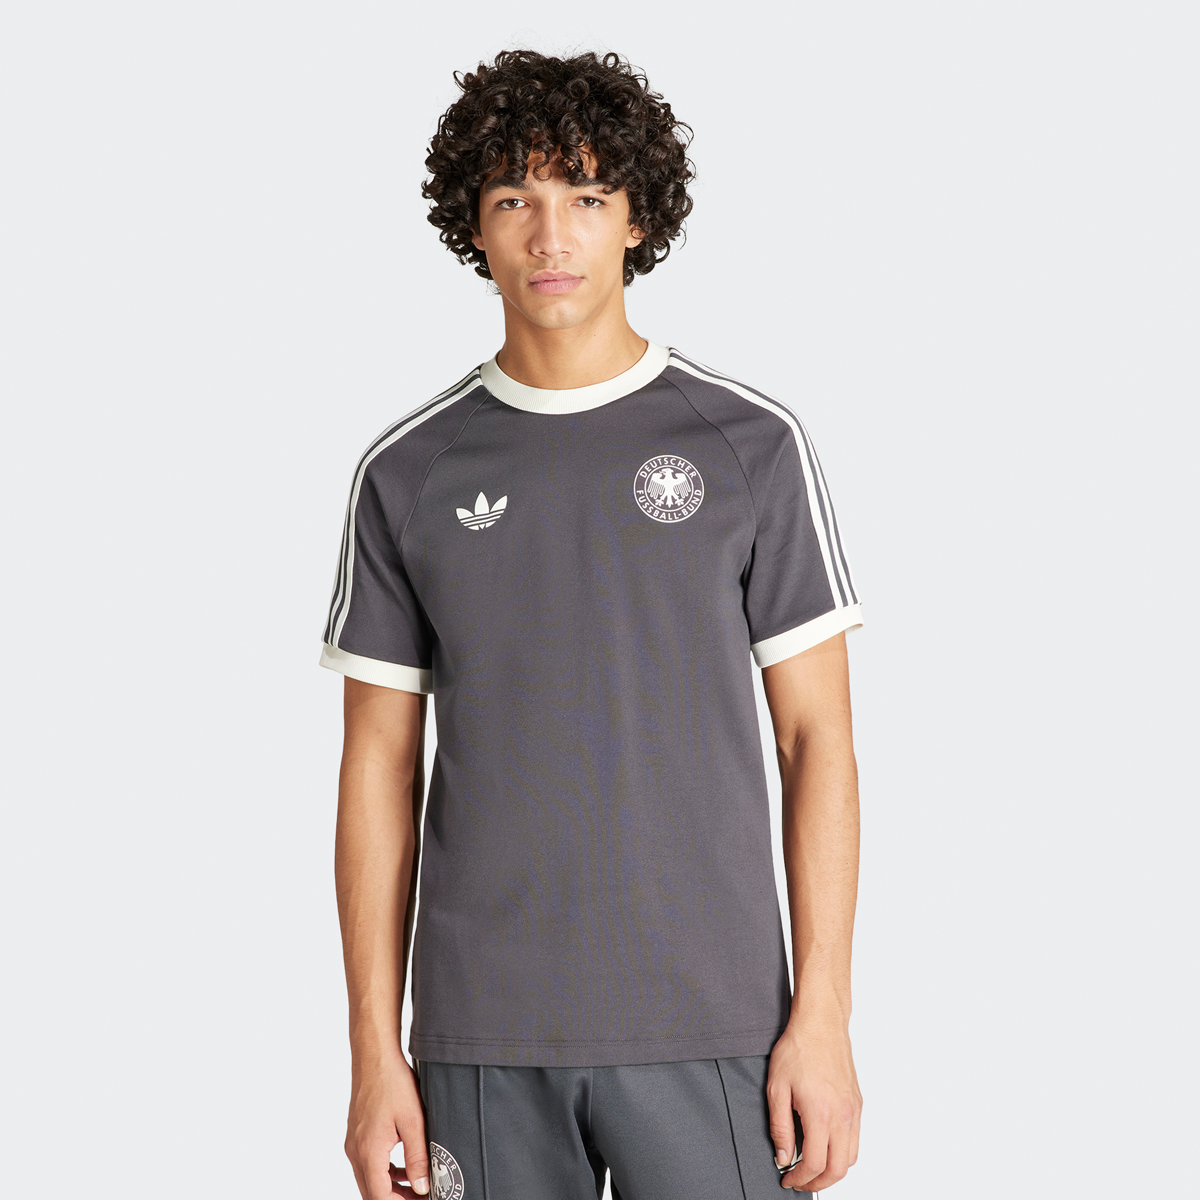 Adidas Originals Dfb Duitsland 3-stripes T-shirt Football Pack T-shirts Heren utility black maat: XL beschikbare maaten:S M XL